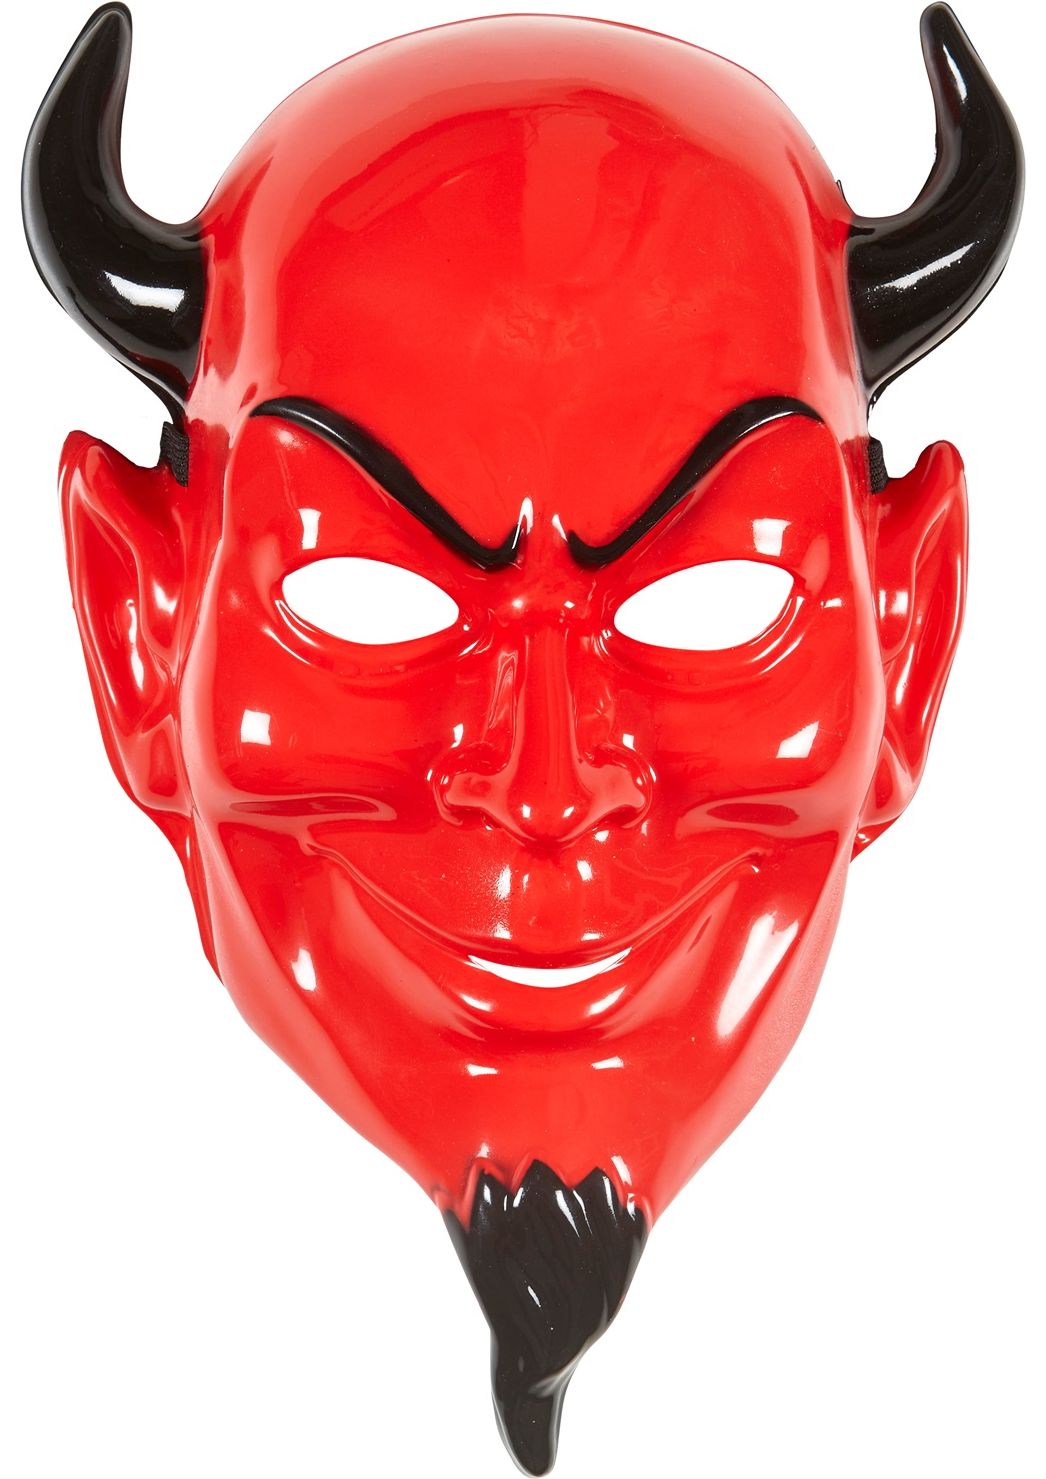 Rode duivel hoofdmasker